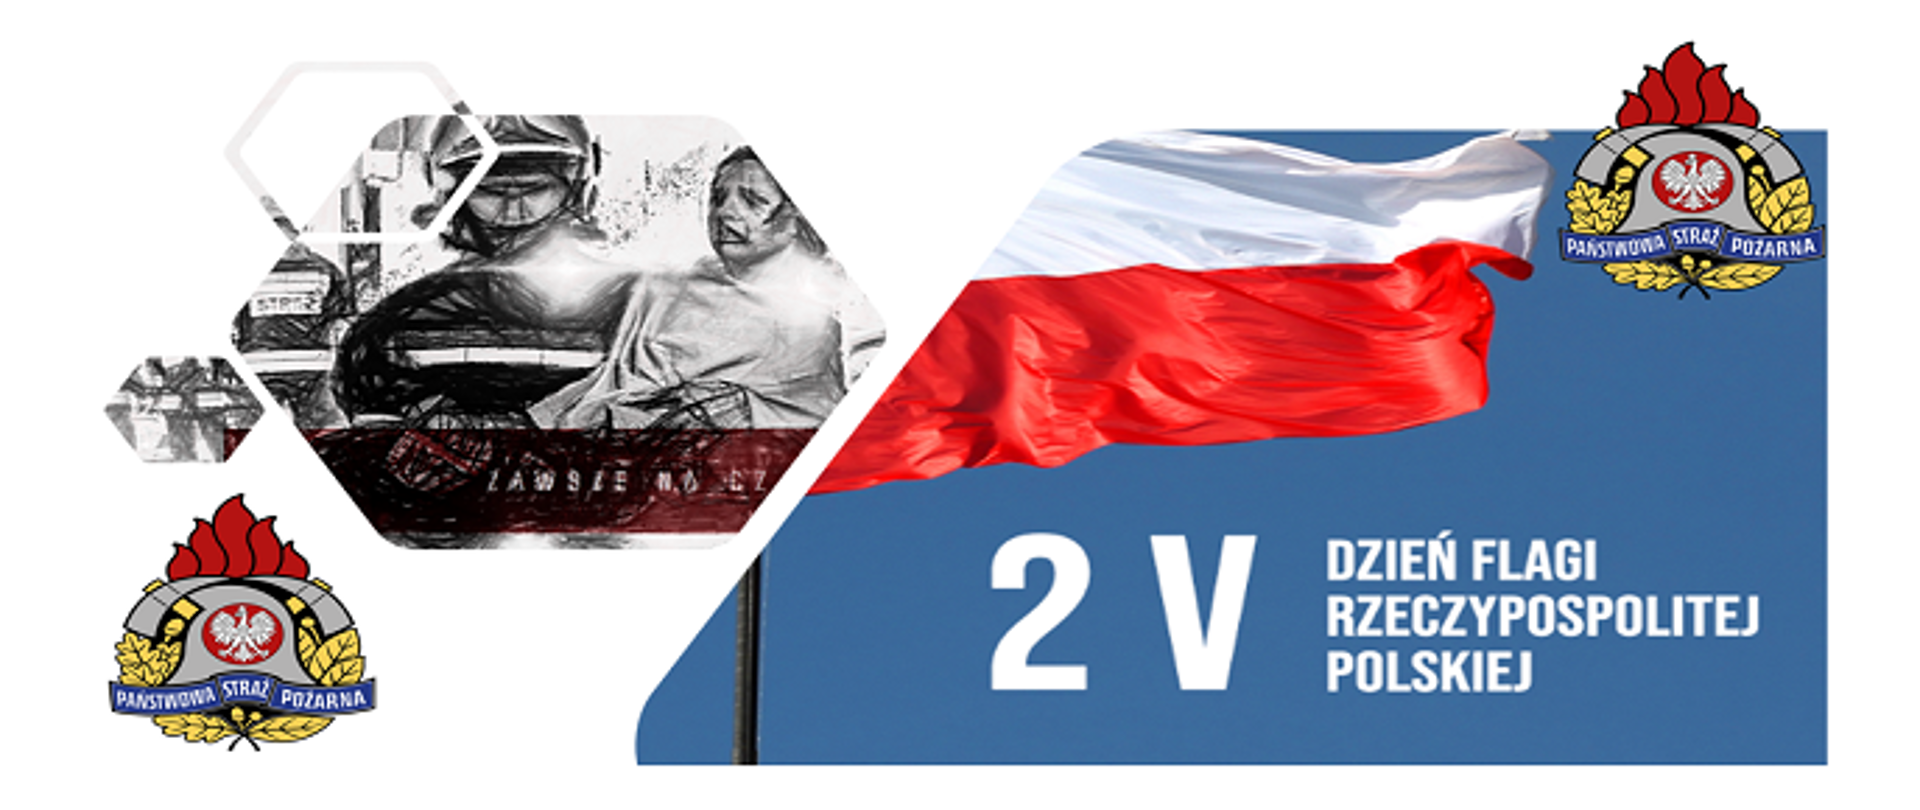 Baner z napisem 2 V Dzień Flagi Rzeczpospolitej Polskiej. W tle kolorowe logo Państwowej Straży Pożarnej.